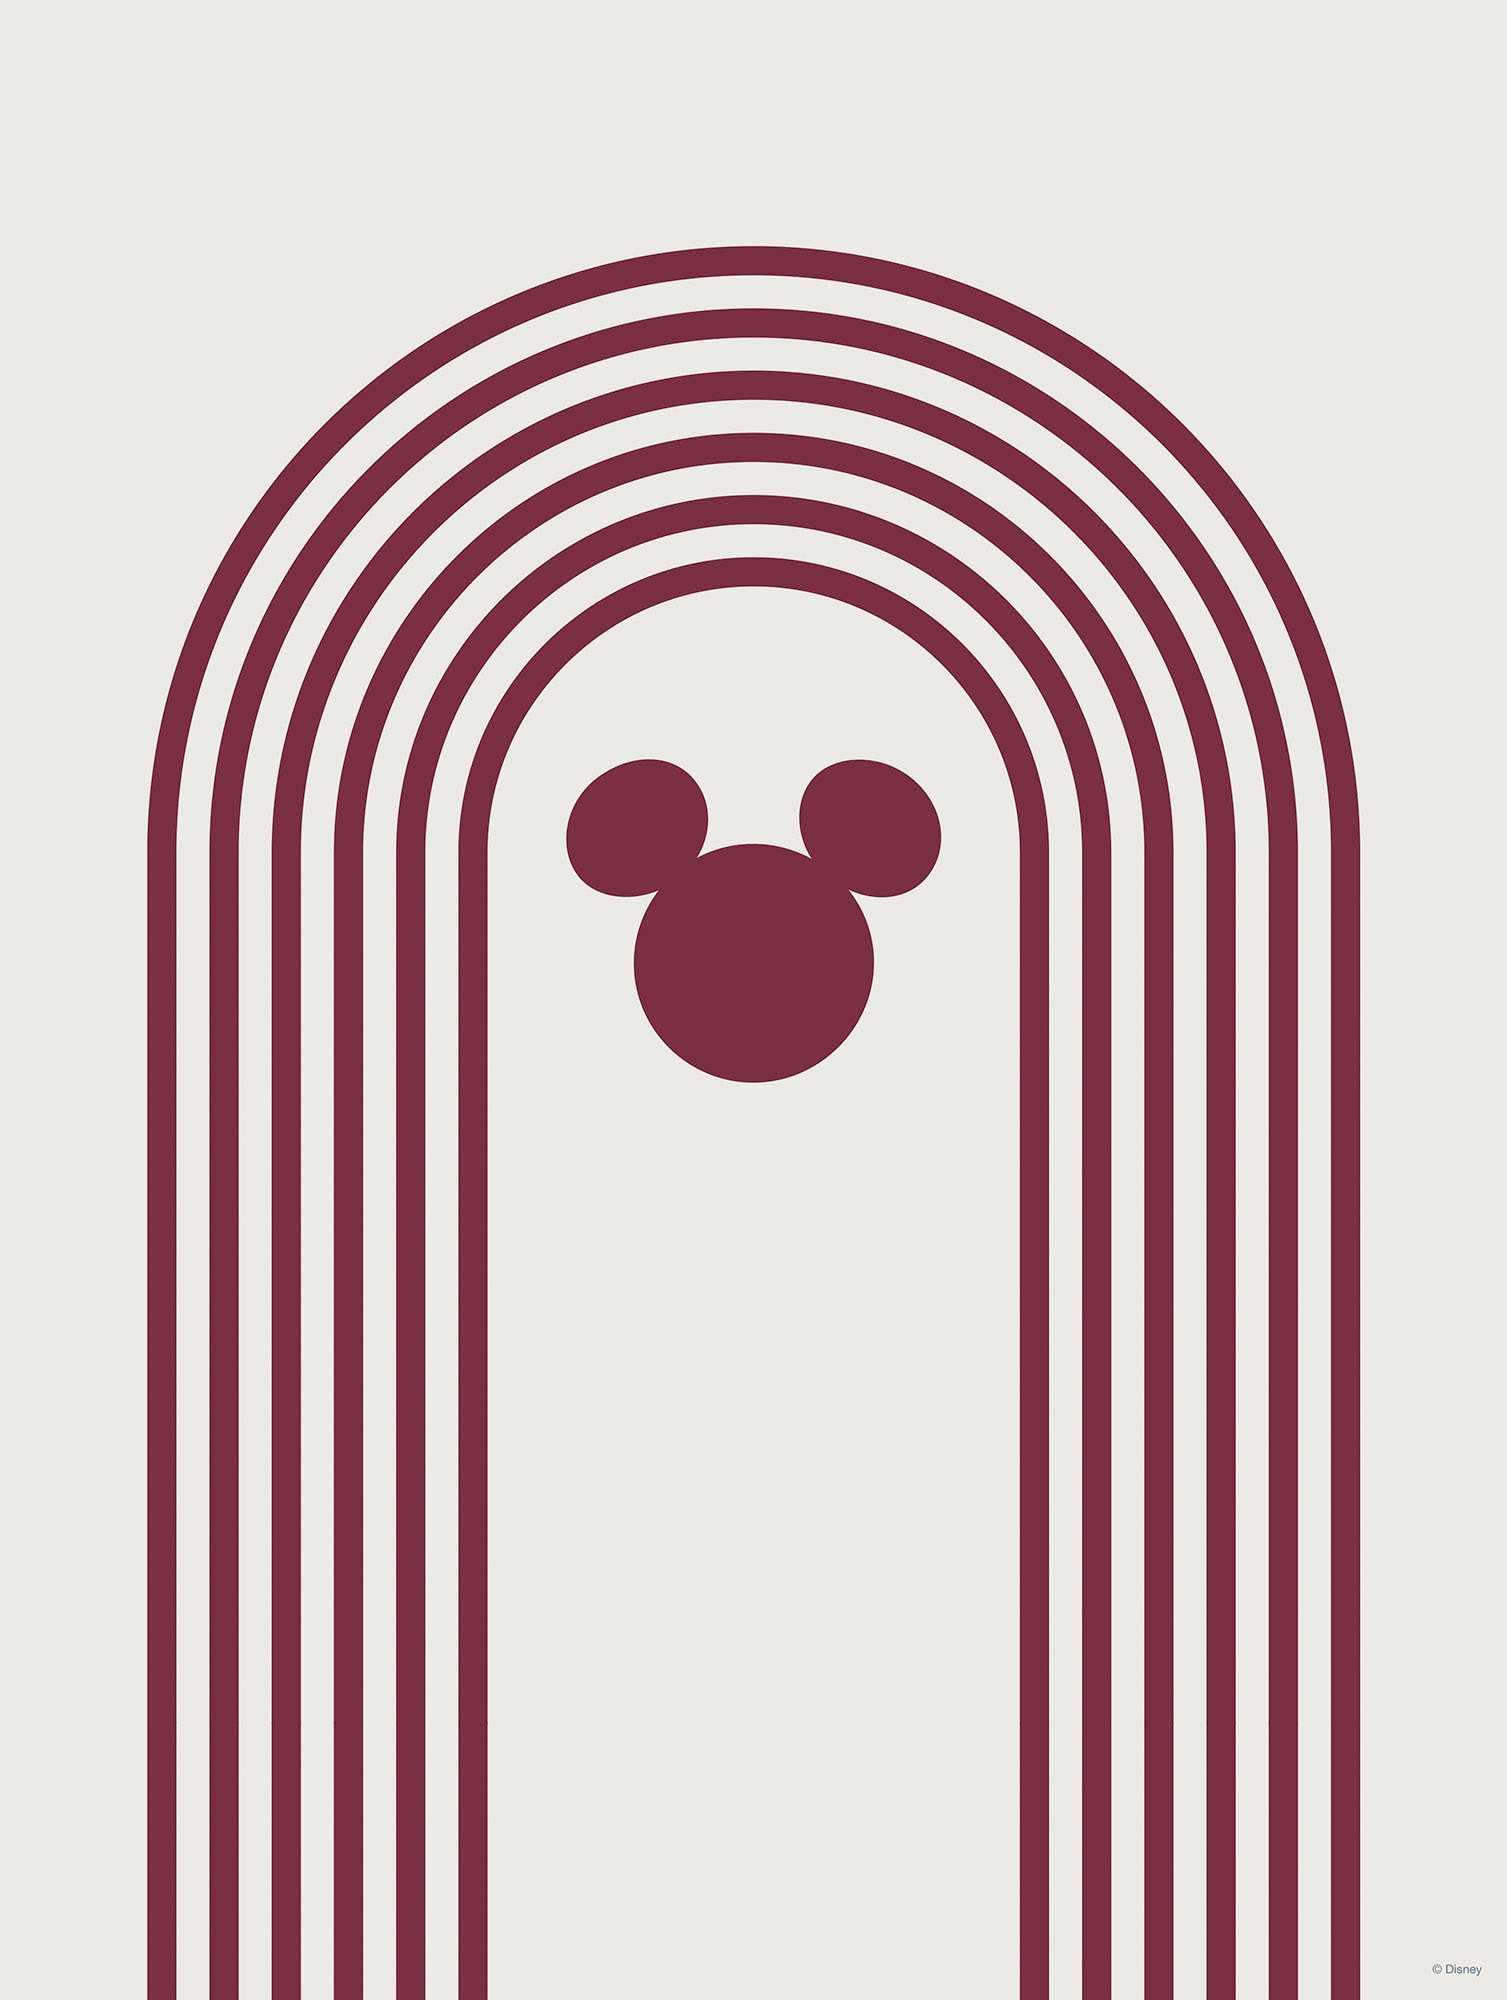 Komar Wandbild »Minimal Mickey«, (1 St.), Deutsches Premium-Poster Fotopapier mit seidenmatter Oberfläche und hoher Lichtbeständigkeit. Für fotorealistische Drucke mit gestochen scharfen Details und hervorragender Farbbrillanz.